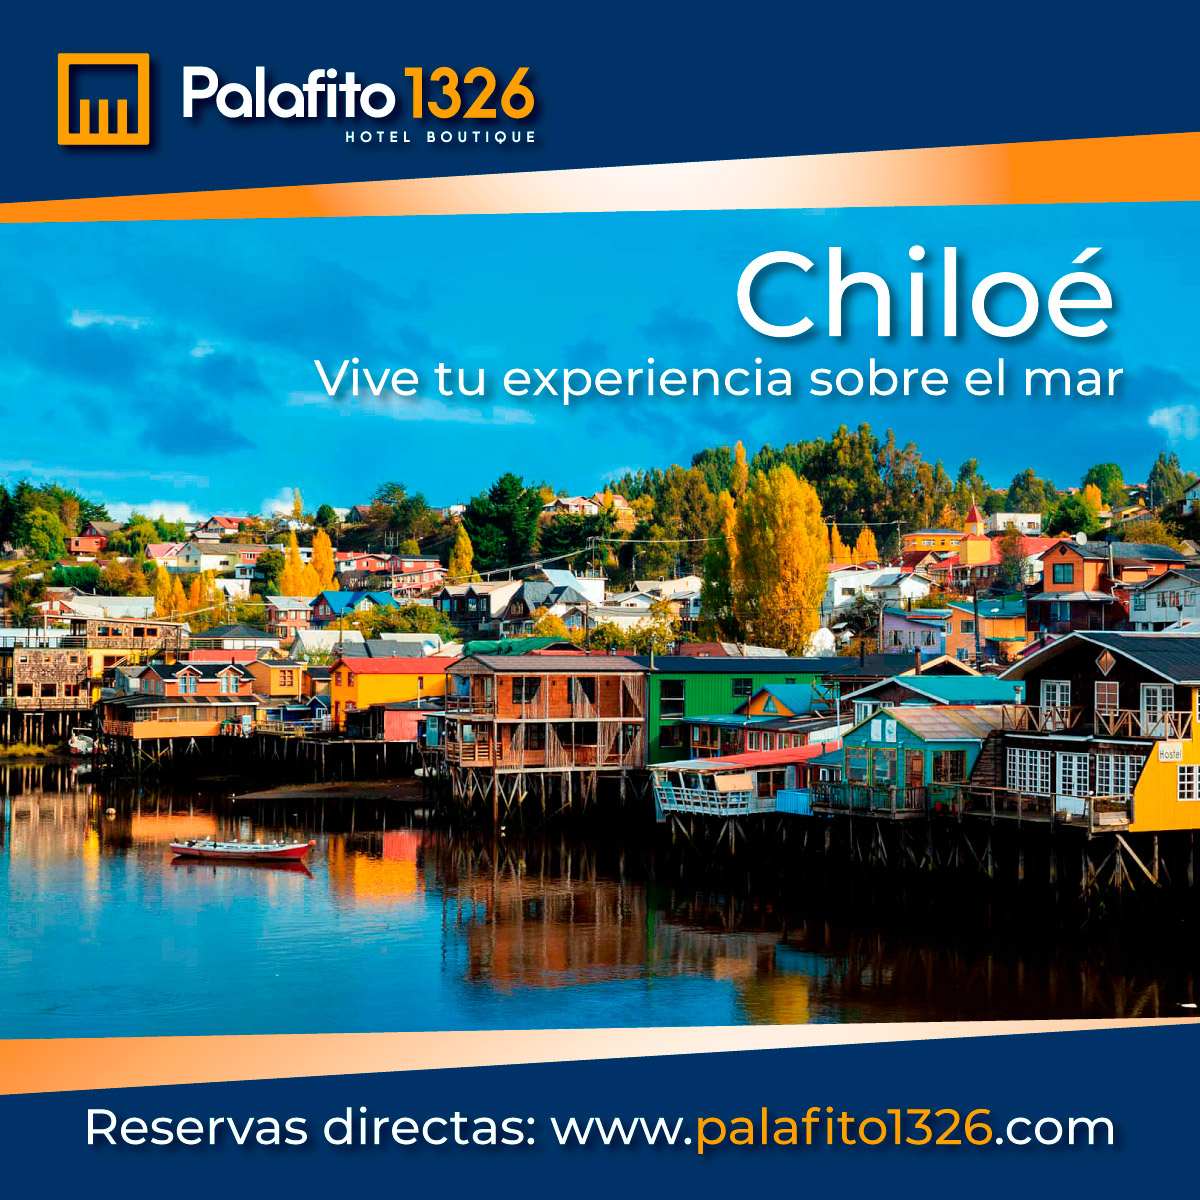 Oferta Semana Santa en Chiloé Palafito Cucao Lodge Chiloé Chiloé Patagonia Chile Vacaciones 2021